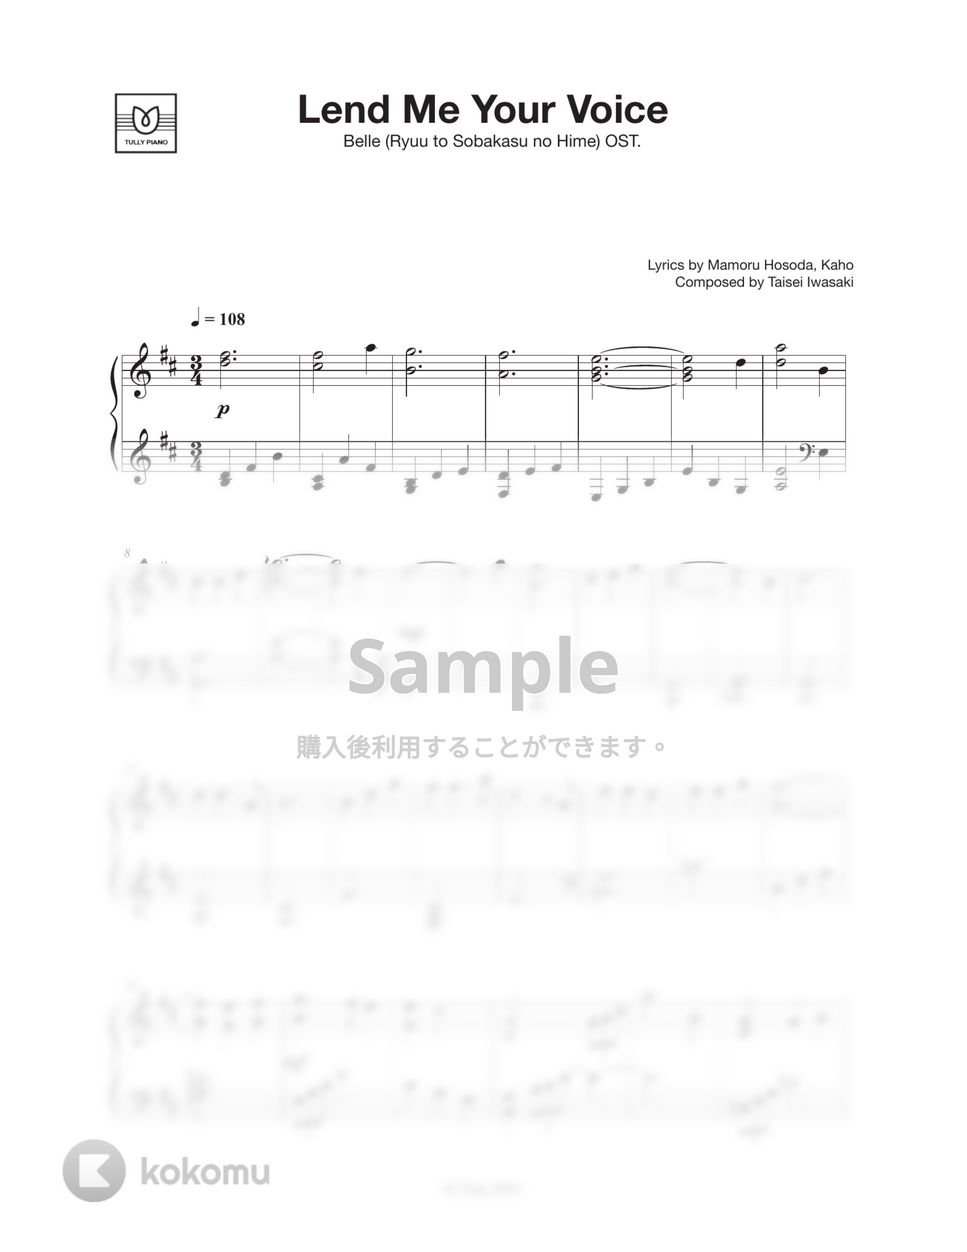 中村佳穂 - 心のそばに by Tully Piano